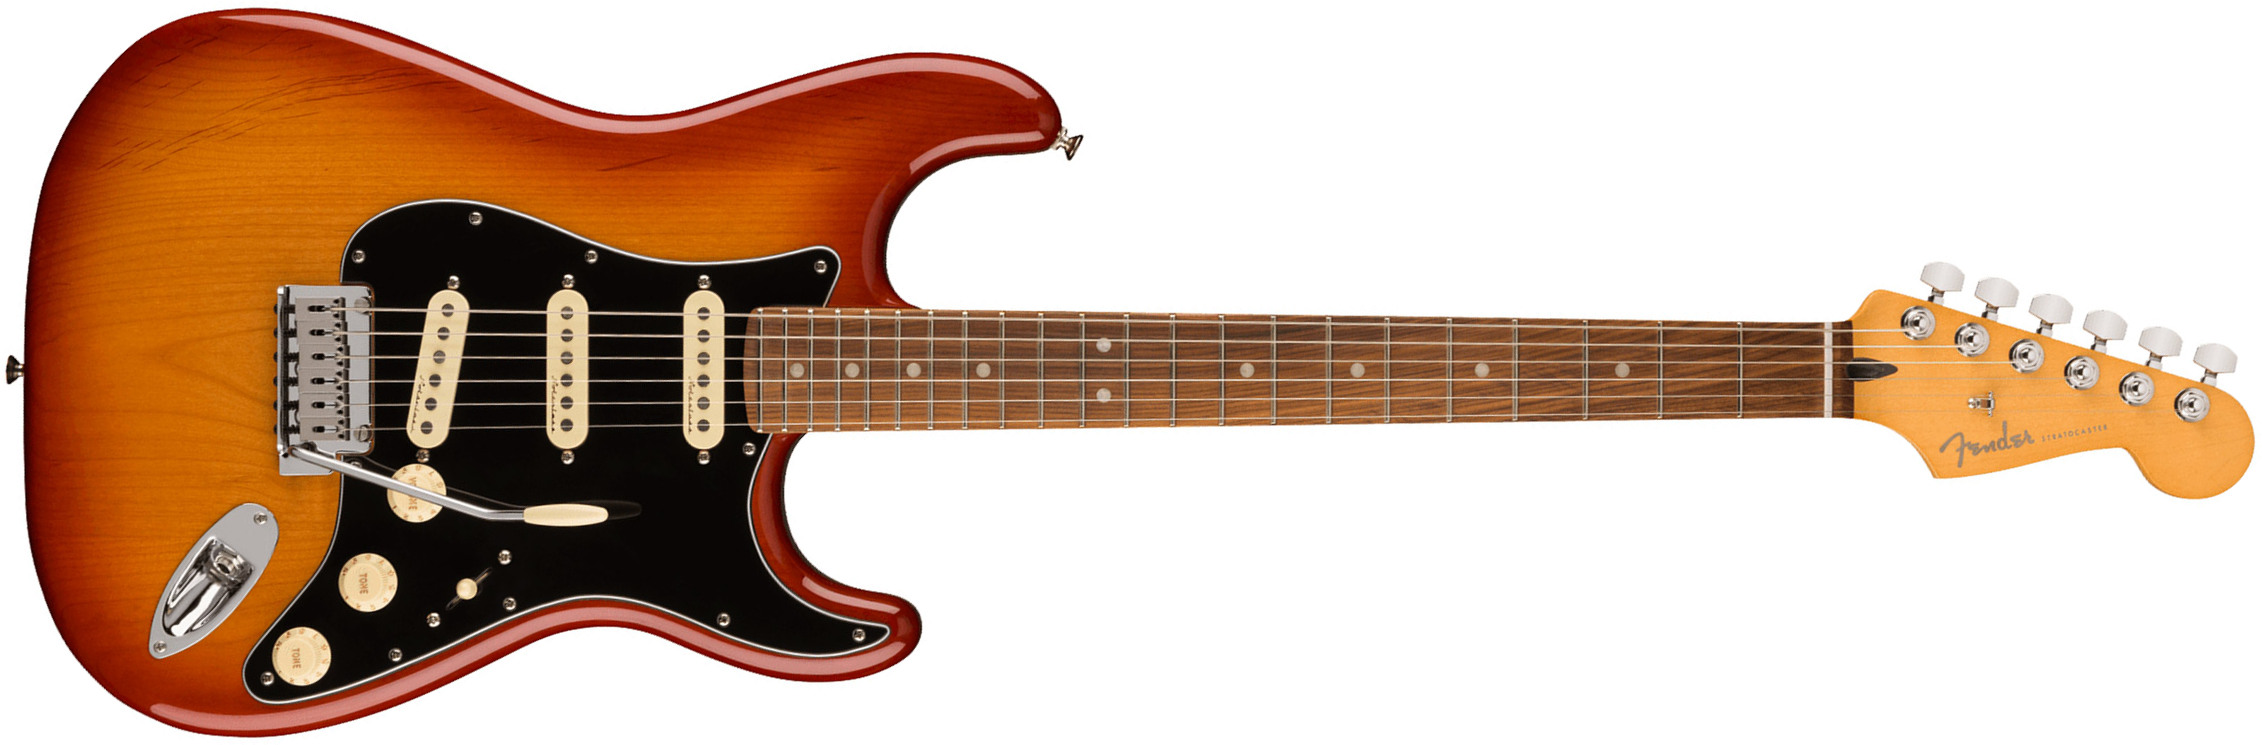 Fender Strat Player Plus Mex 2023 3s Trem Pf - Sienna Sunburst - Elektrische gitaar in Str-vorm - Main picture